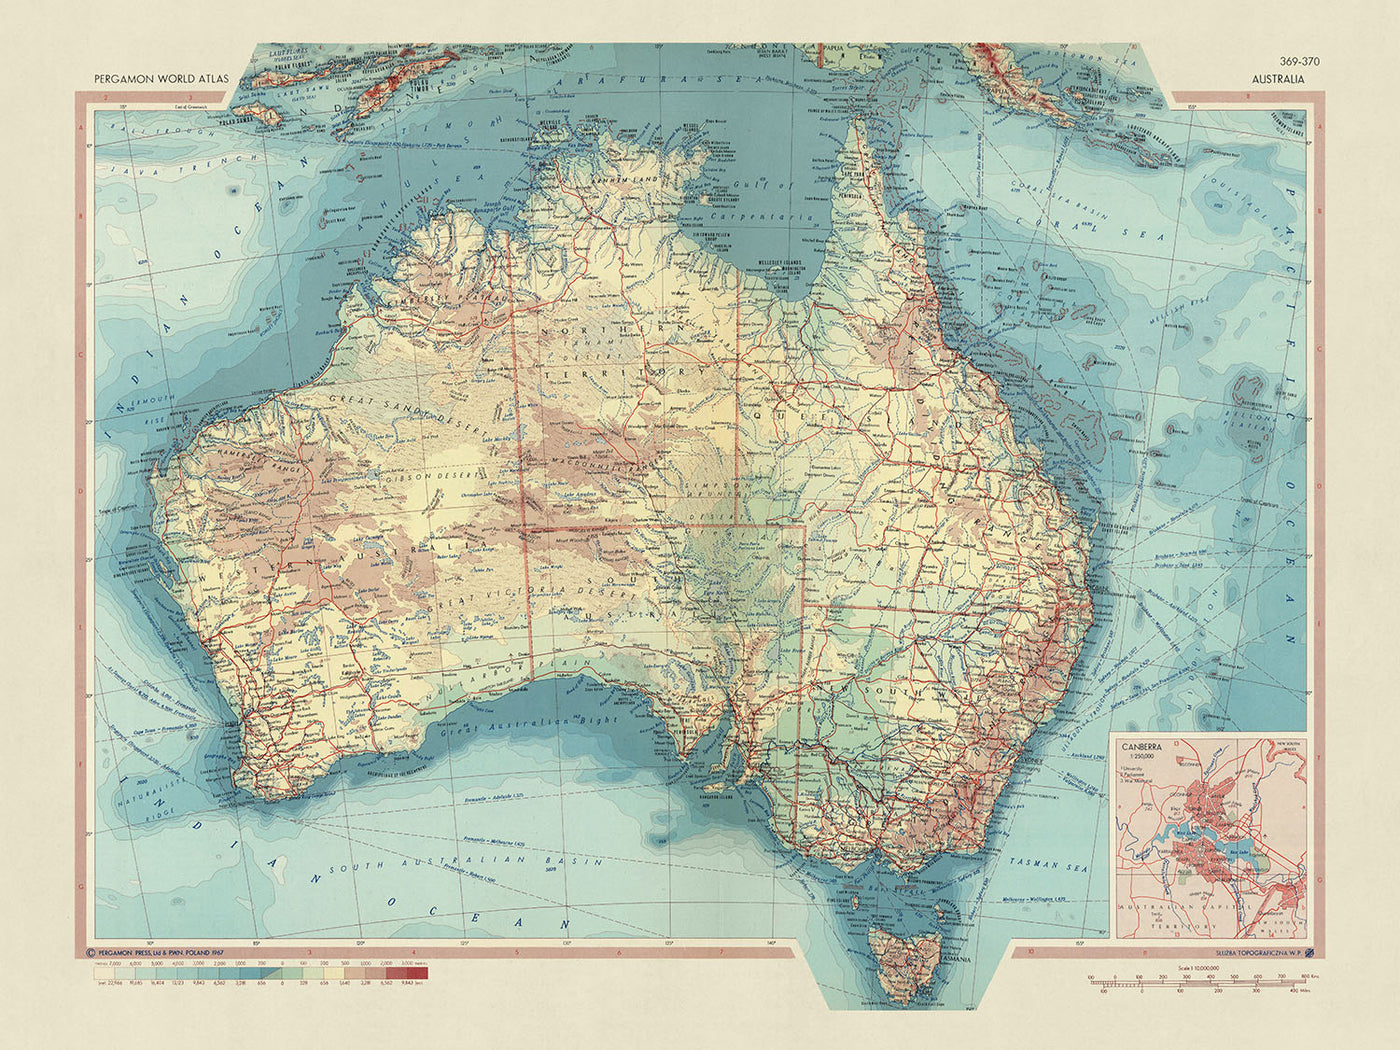 Mapa antiguo de Australia del Servicio de Topografía del Ejército Polaco, 1967: límites políticos detallados, topografía física variada, paisajes naturales diversos, artesanía meticulosa, representación geográfica completa